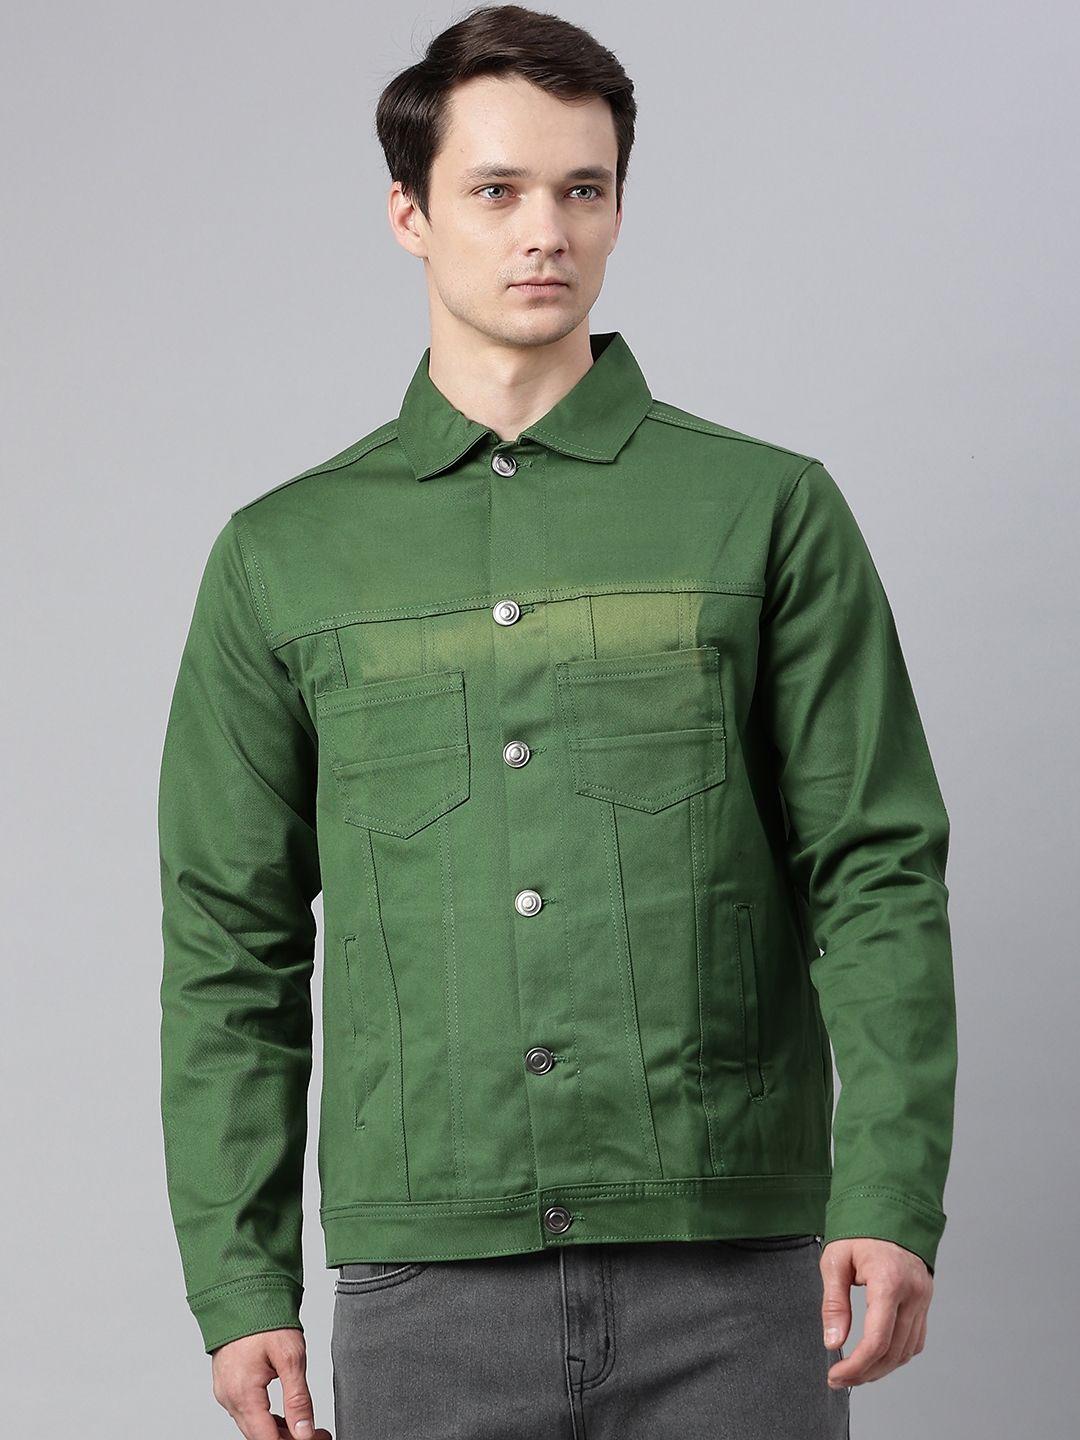 hubberholme-men-green-solid-tailored-jacket